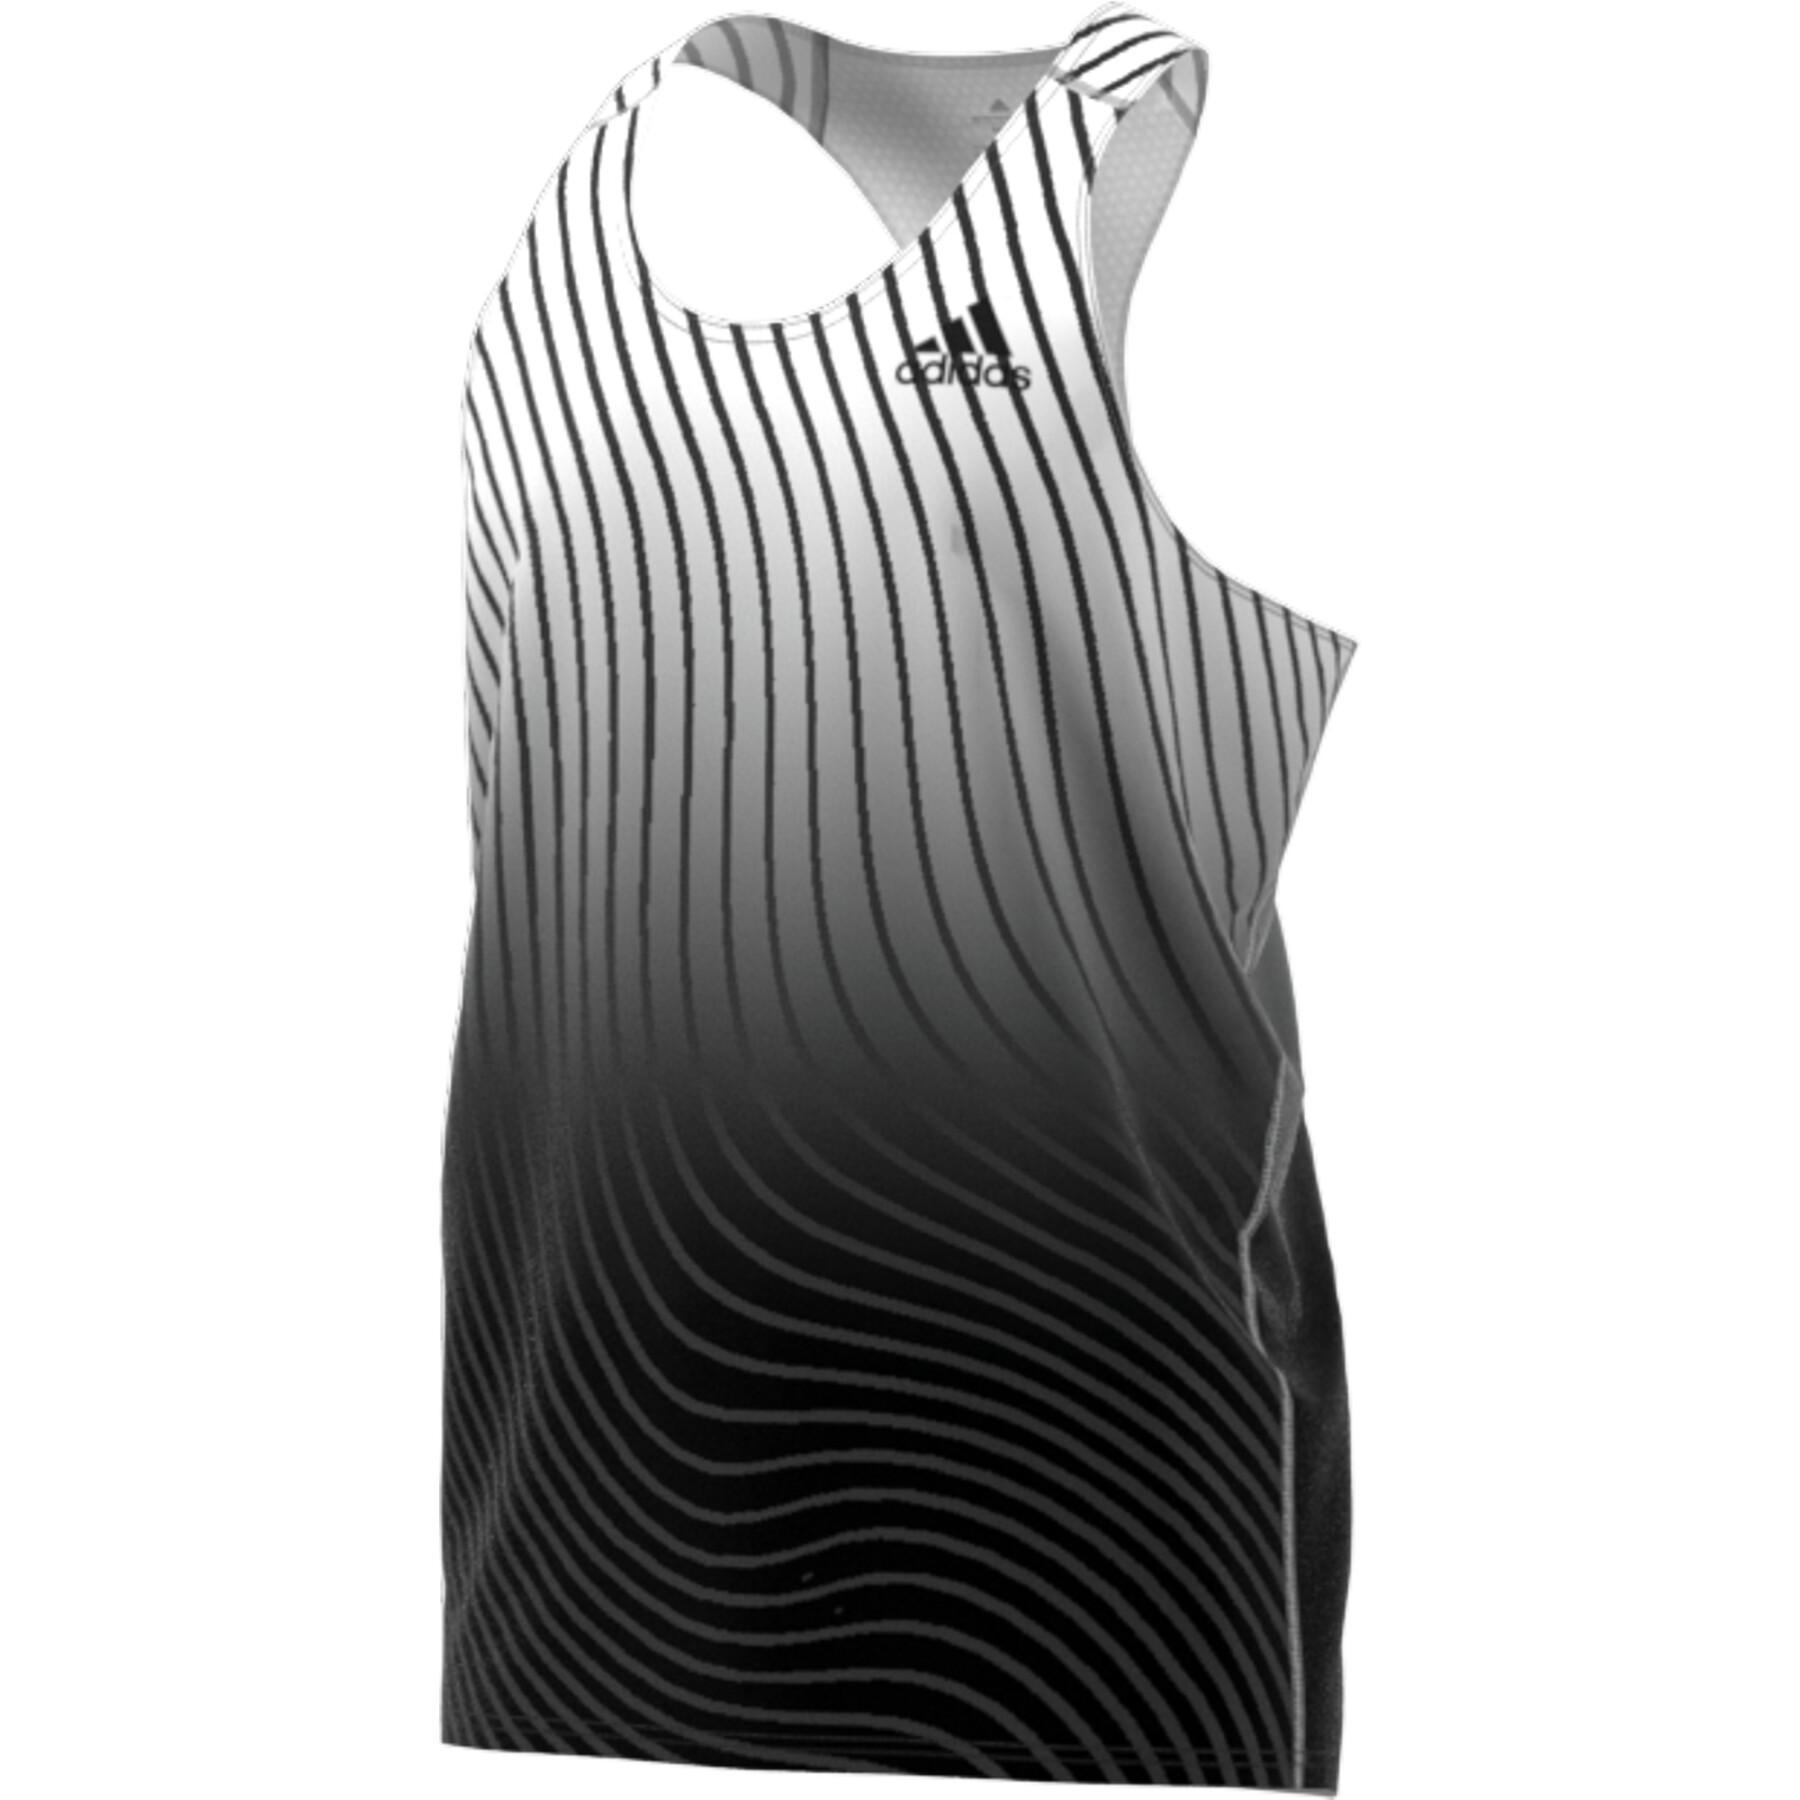 Camiseta de tirantes adidas Adizero Engineered